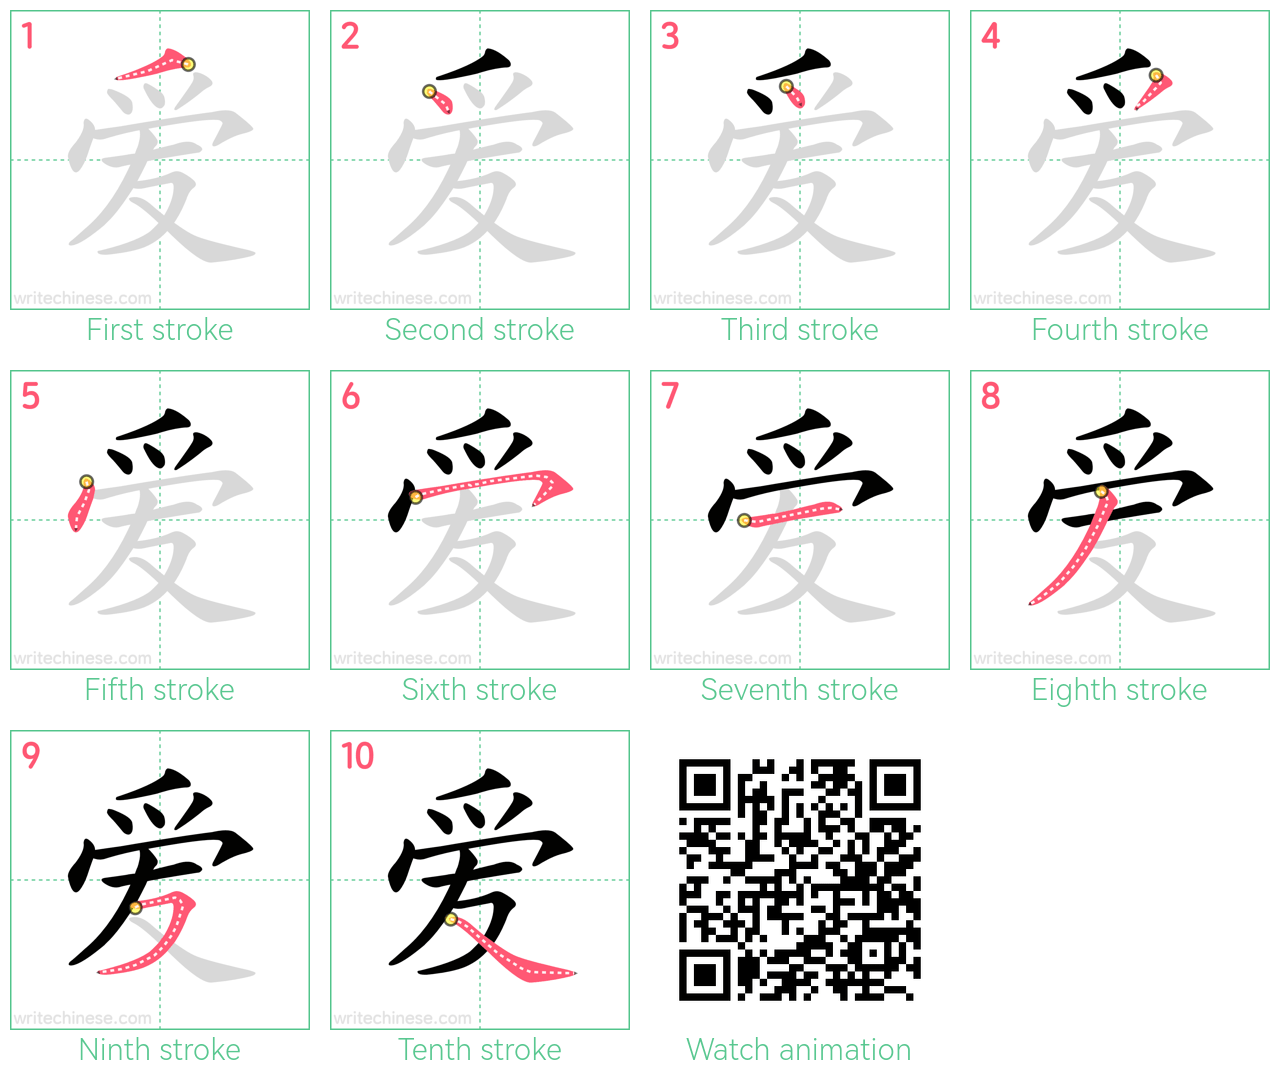 爱 step-by-step stroke order diagrams